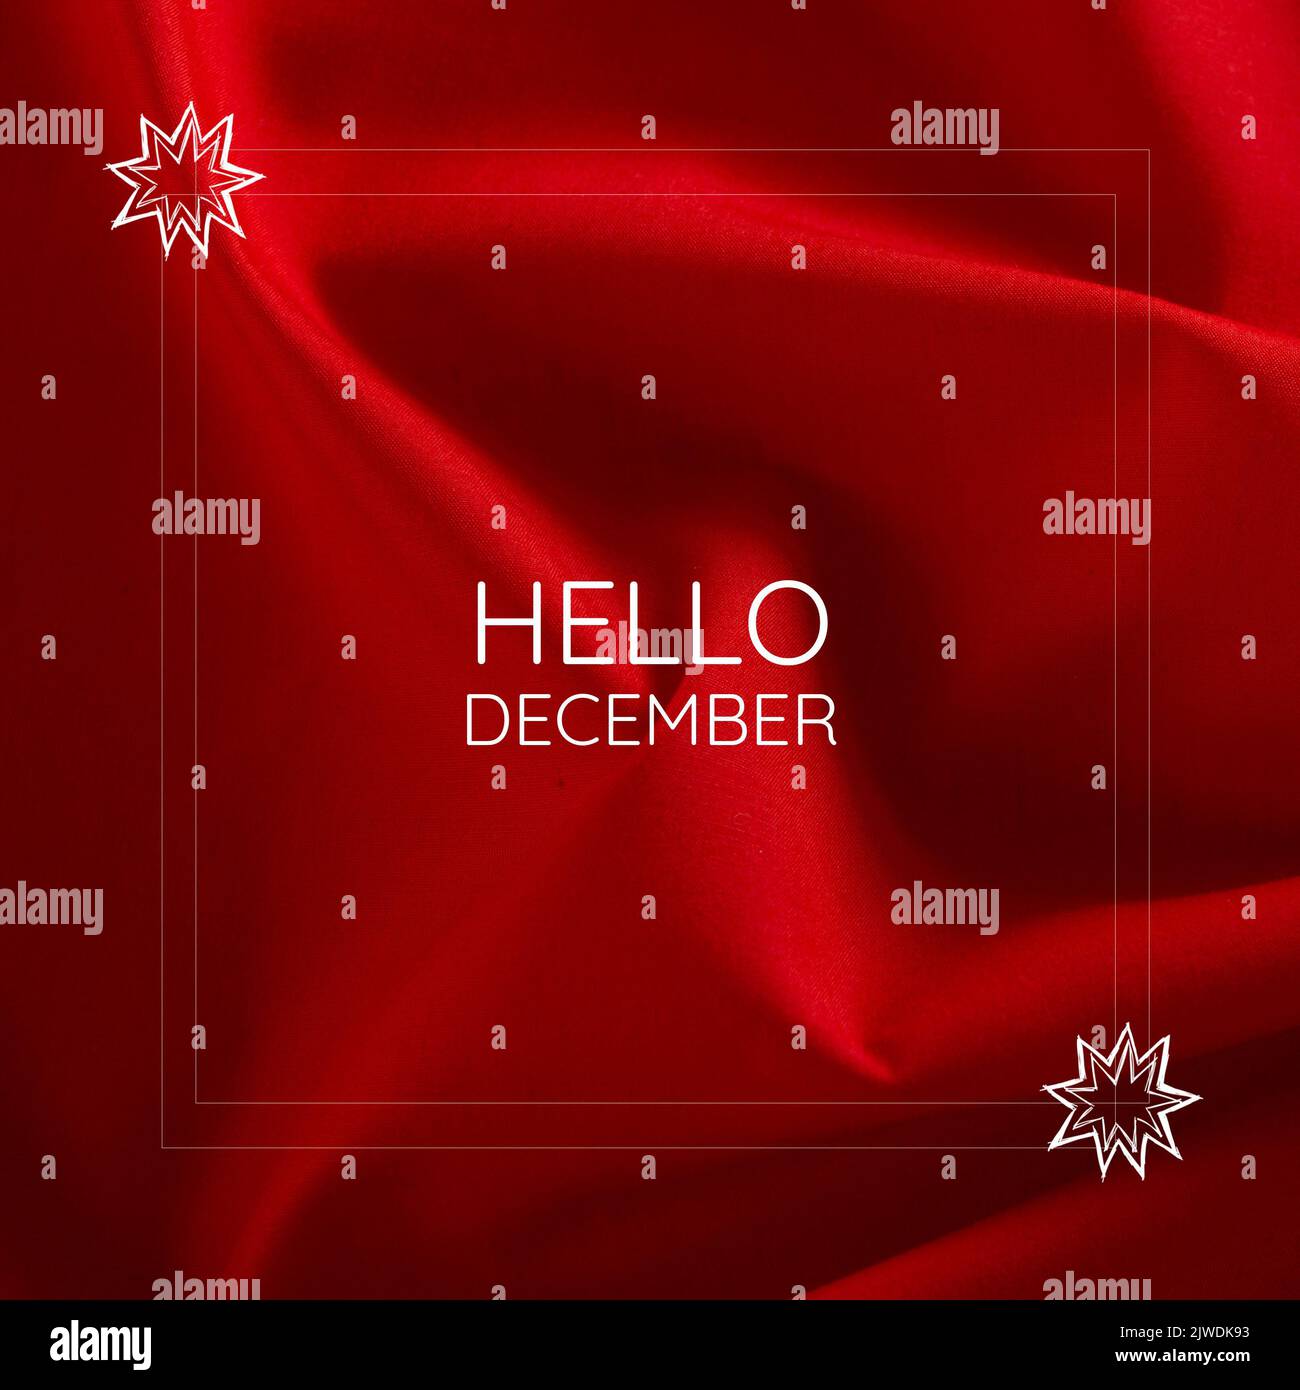 Compuesto de texto de hola diciembre en marcos blancos con forma de estrella sobre fondo de látex rojo Foto de stock